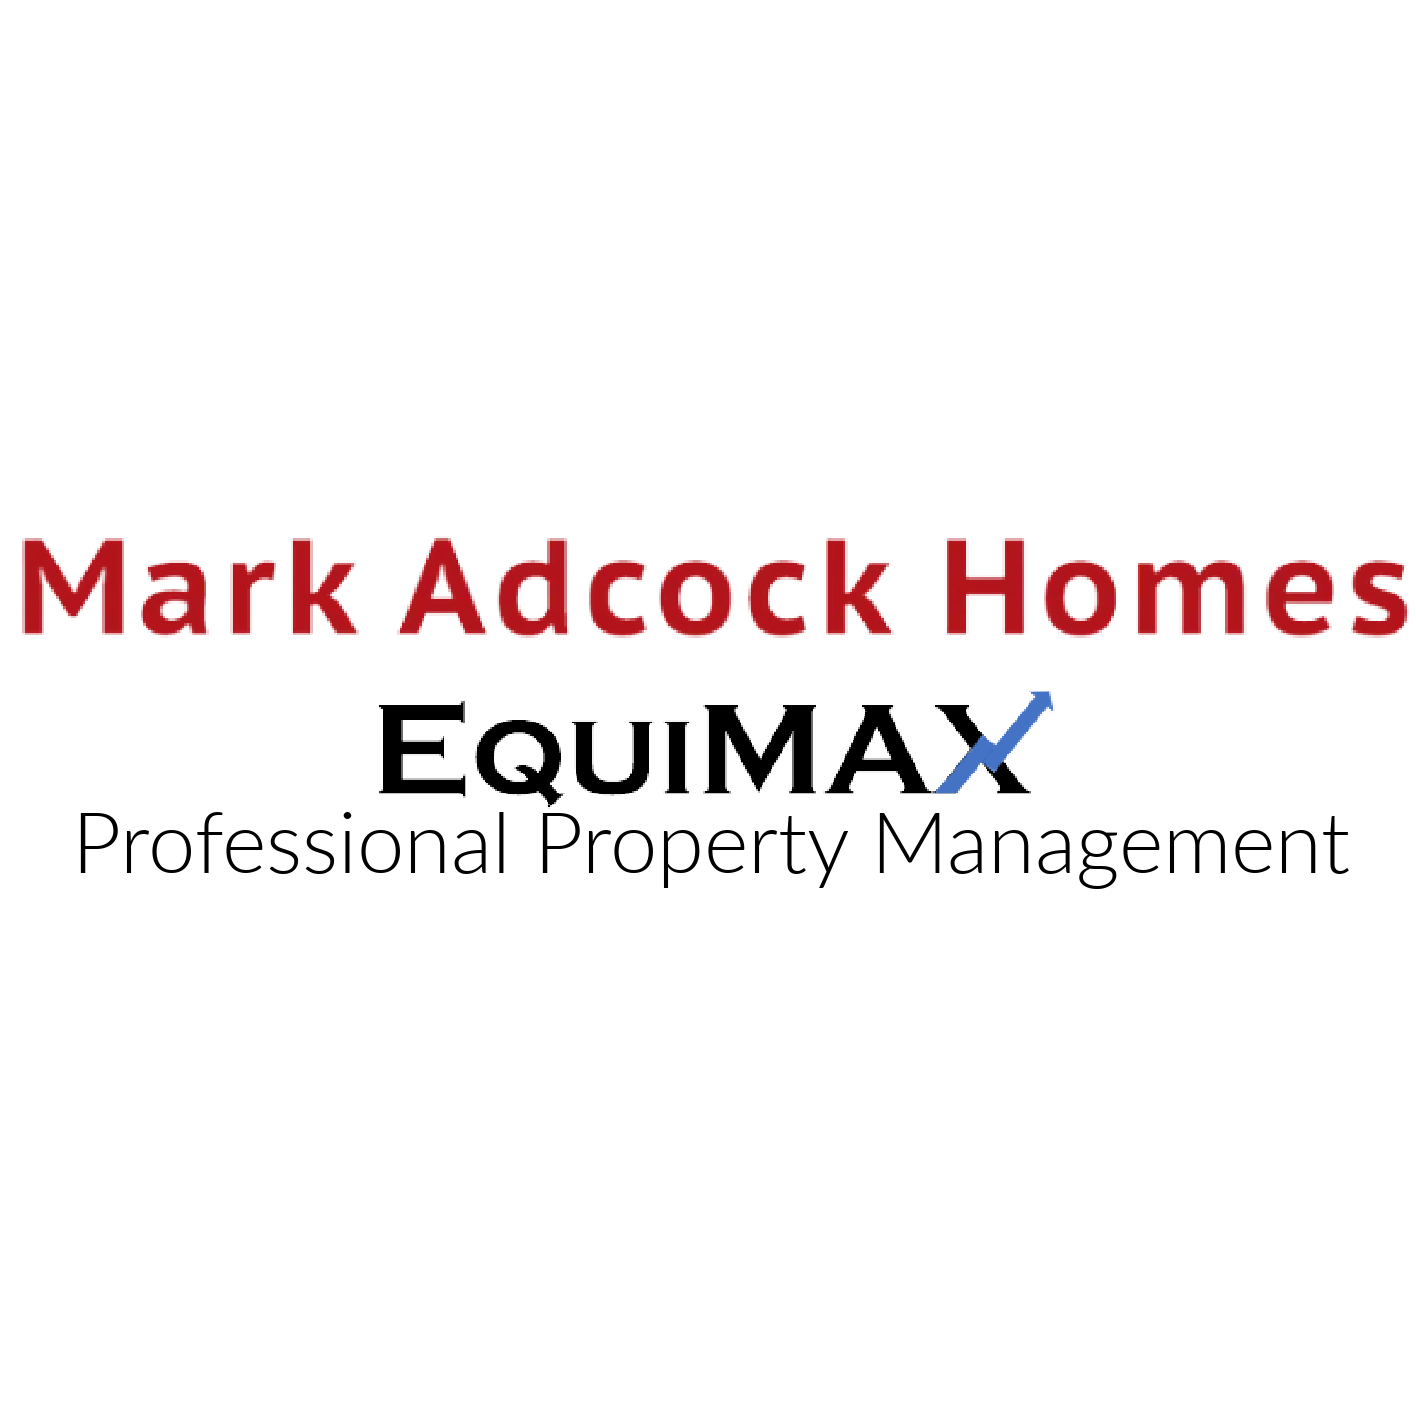 Mark Adcock Homes